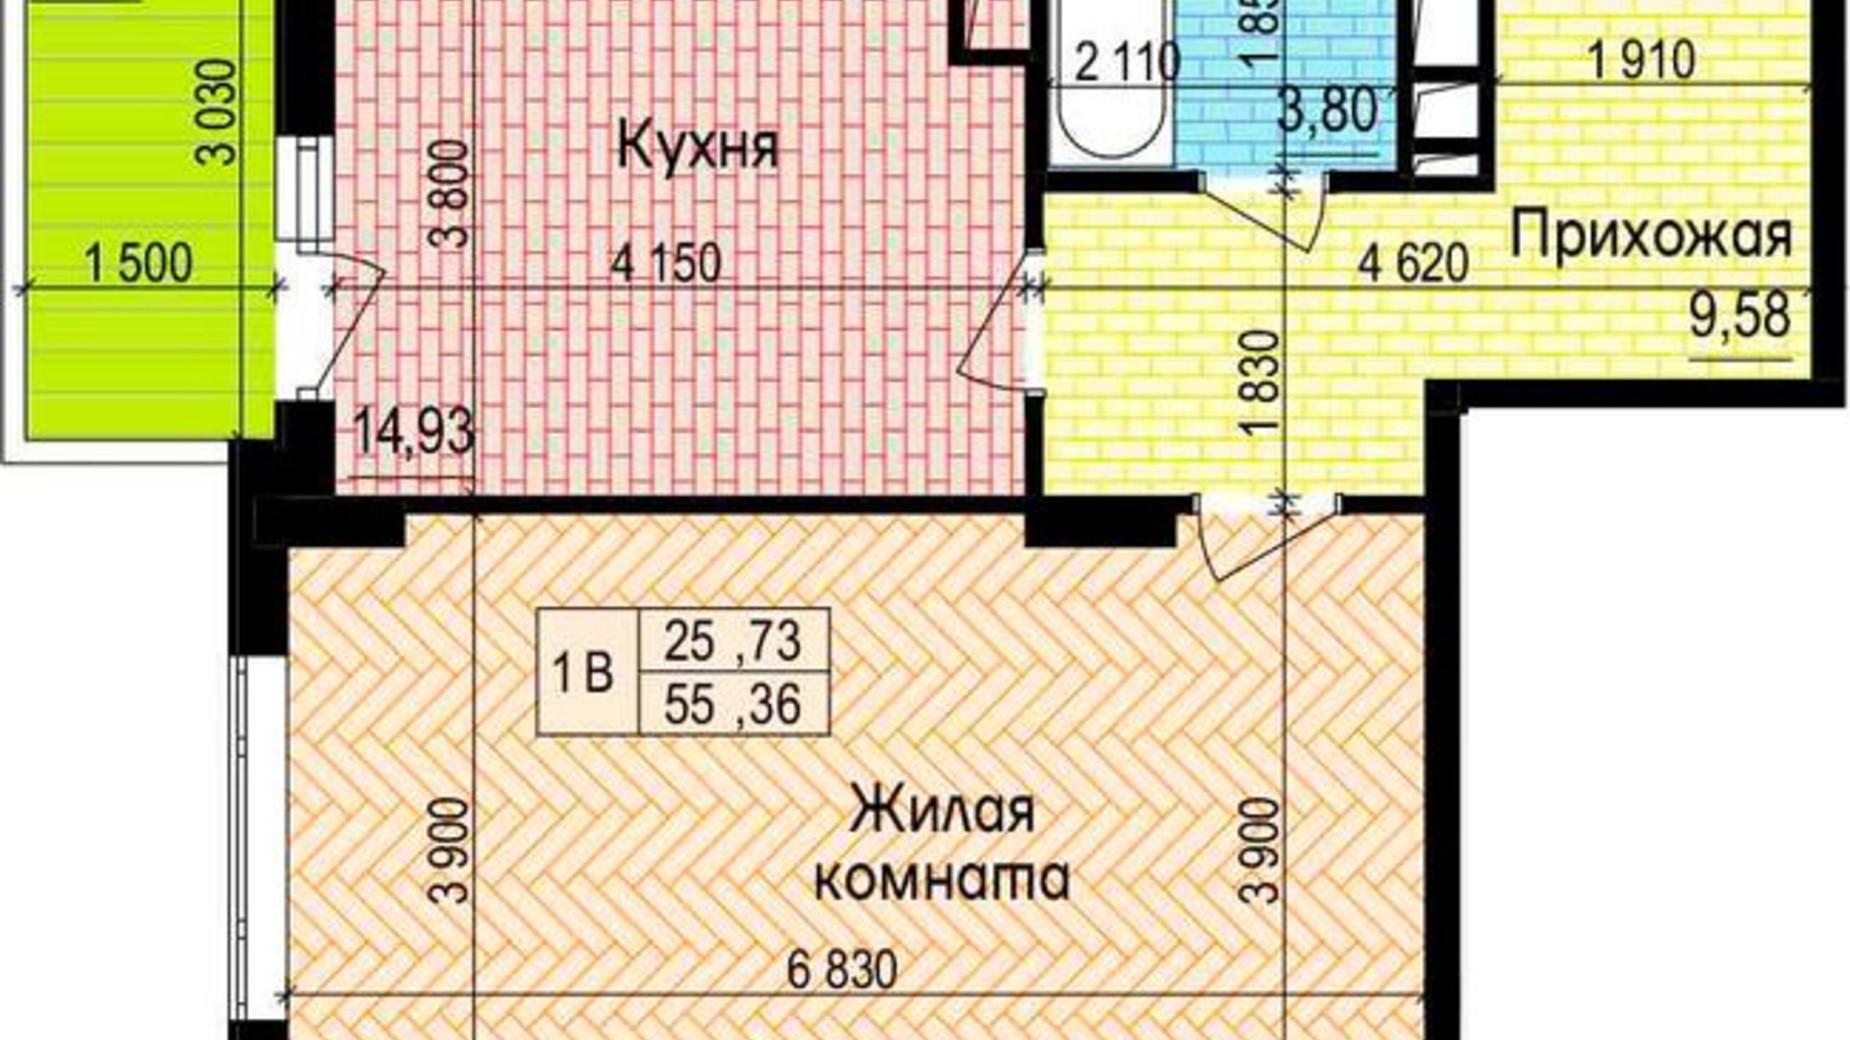 Планировка 1-комнатной квартиры в ЖК Пролисок 55.36 м², фото 341129